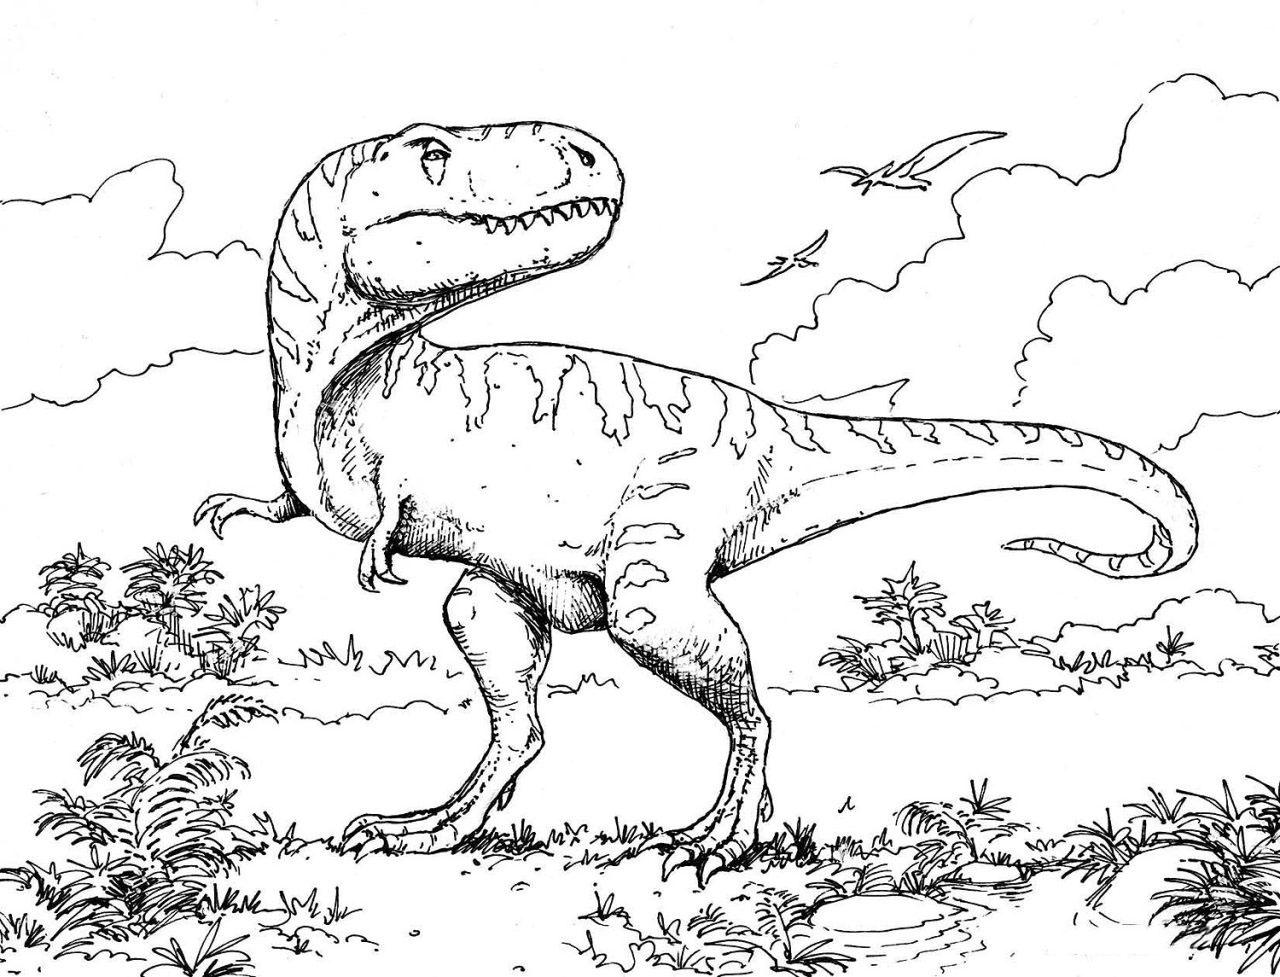 Bản Vẽ Khủng Long Phác Thảo Tay Của Tyrannosaurus Rex Minh Họa Đen Trắng  Hình minh họa Sẵn có  Tải xuống Hình ảnh Ngay bây giờ  iStock